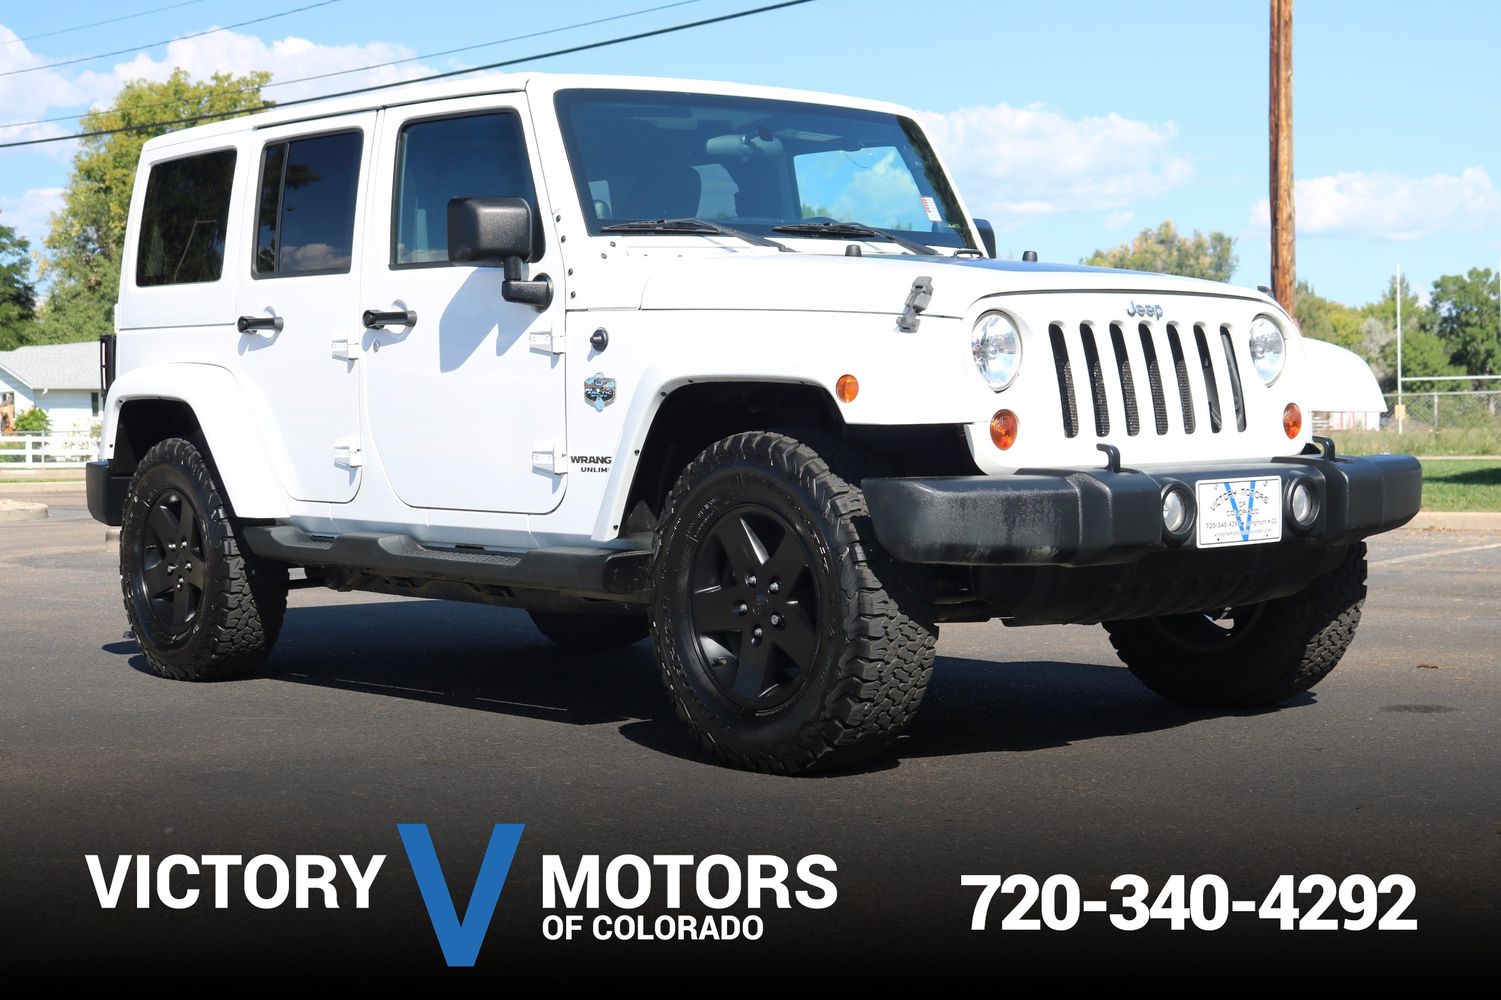 2012 Jeep Wrangler Unlimited Arctic | Victory Motors of Colorado